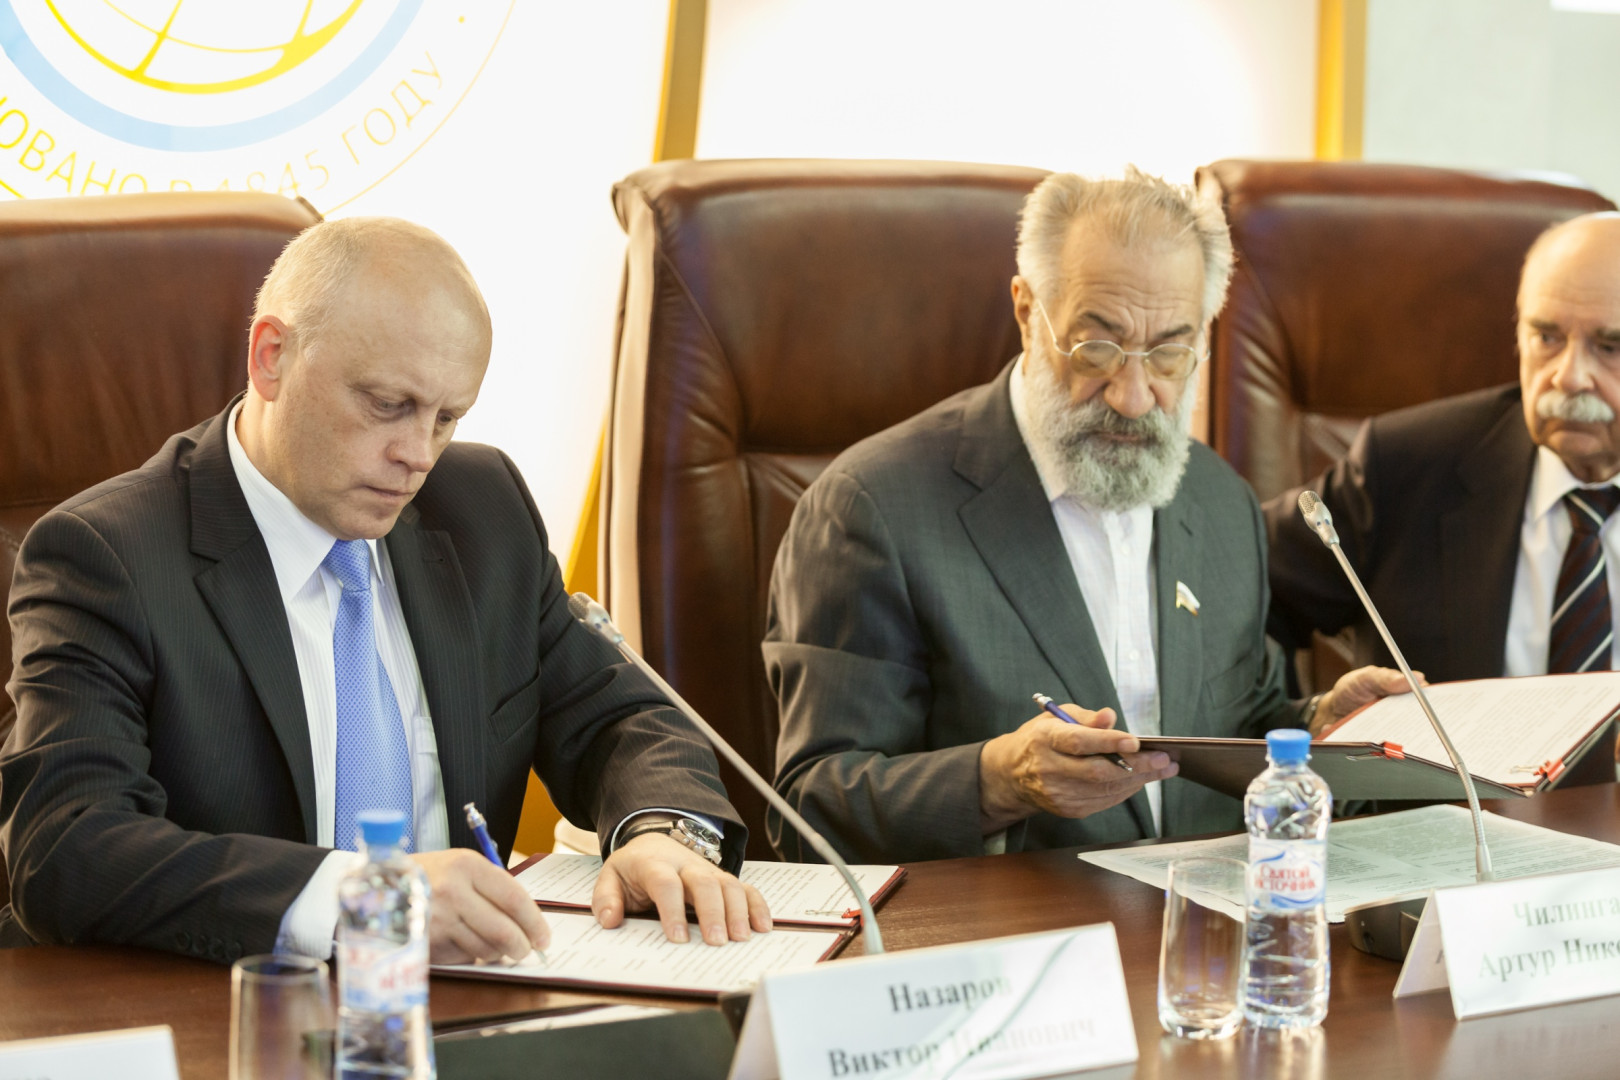 Подписание Соглашения о взаимодействии с Омской областью (20 мая 2015 года)